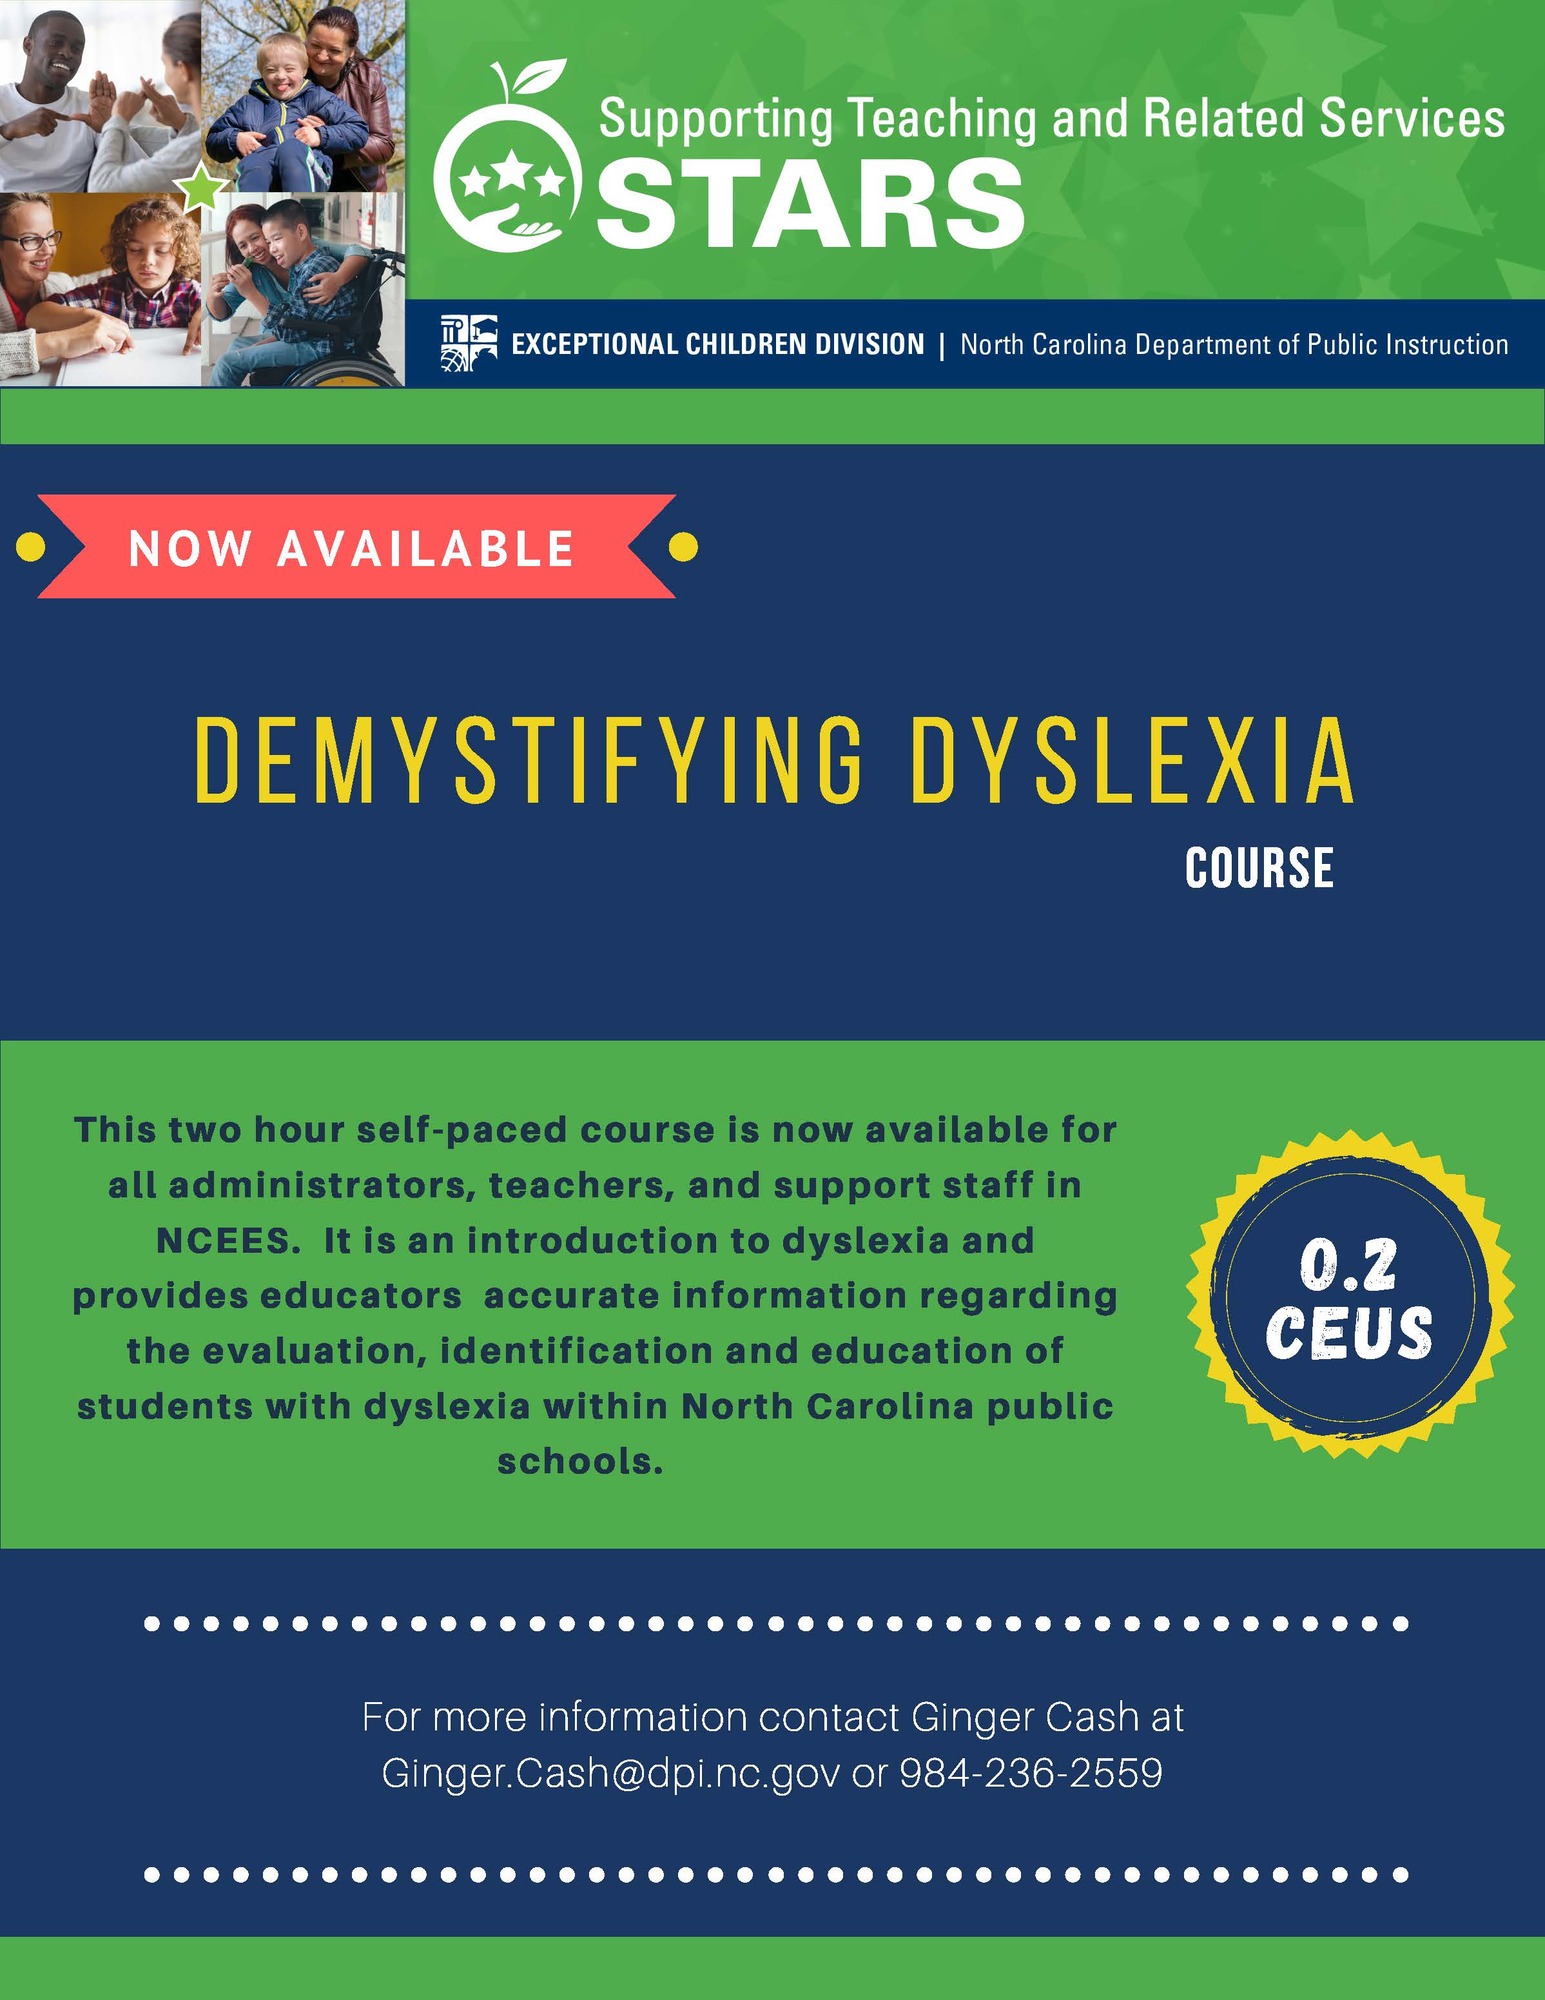 Demystifying Dyslexia